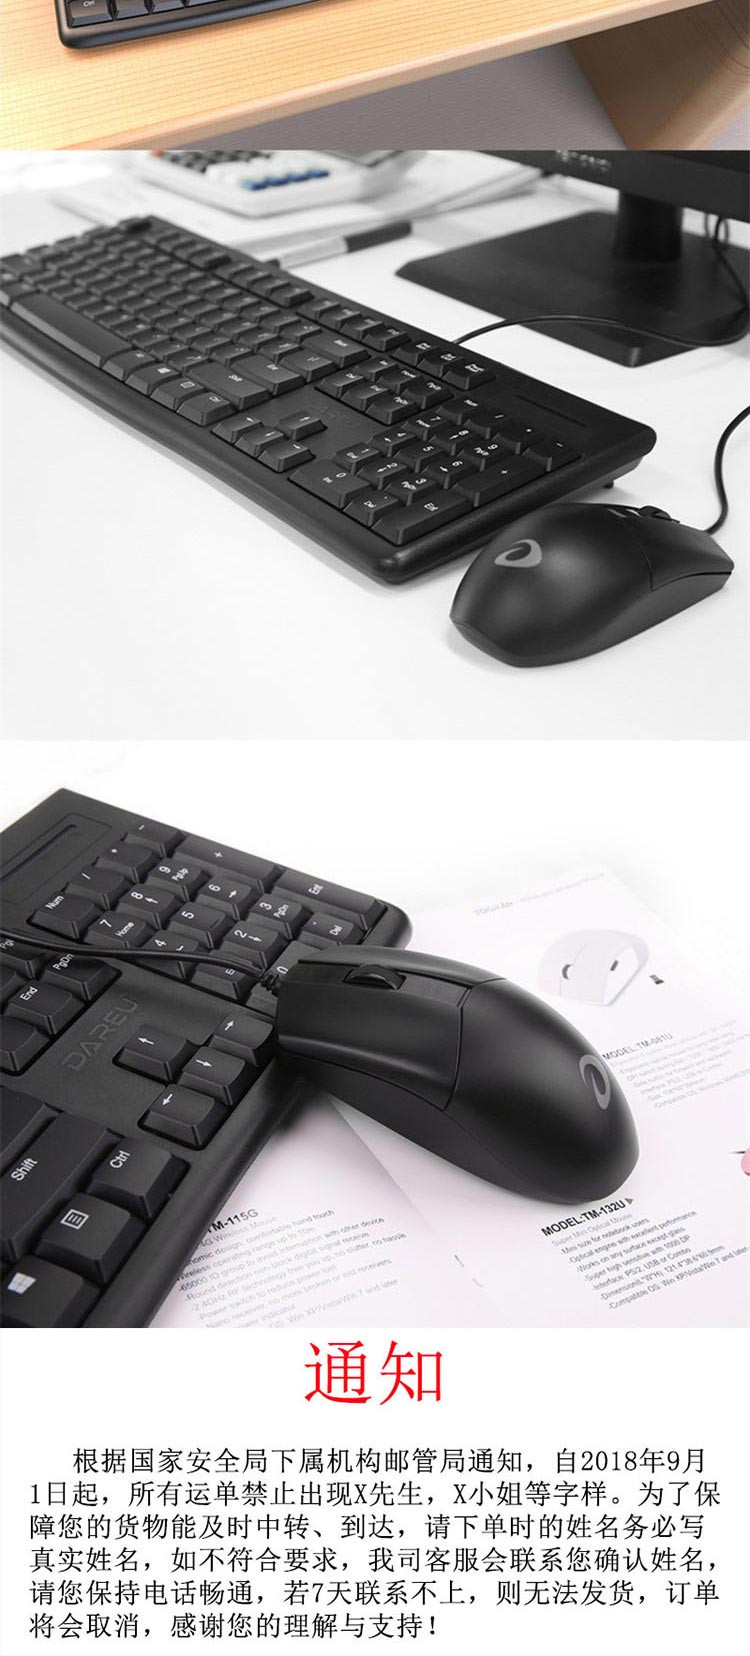 达尔优 键鼠套装LK185T 办公家用有线USB笔记本台式机电脑 两色可选